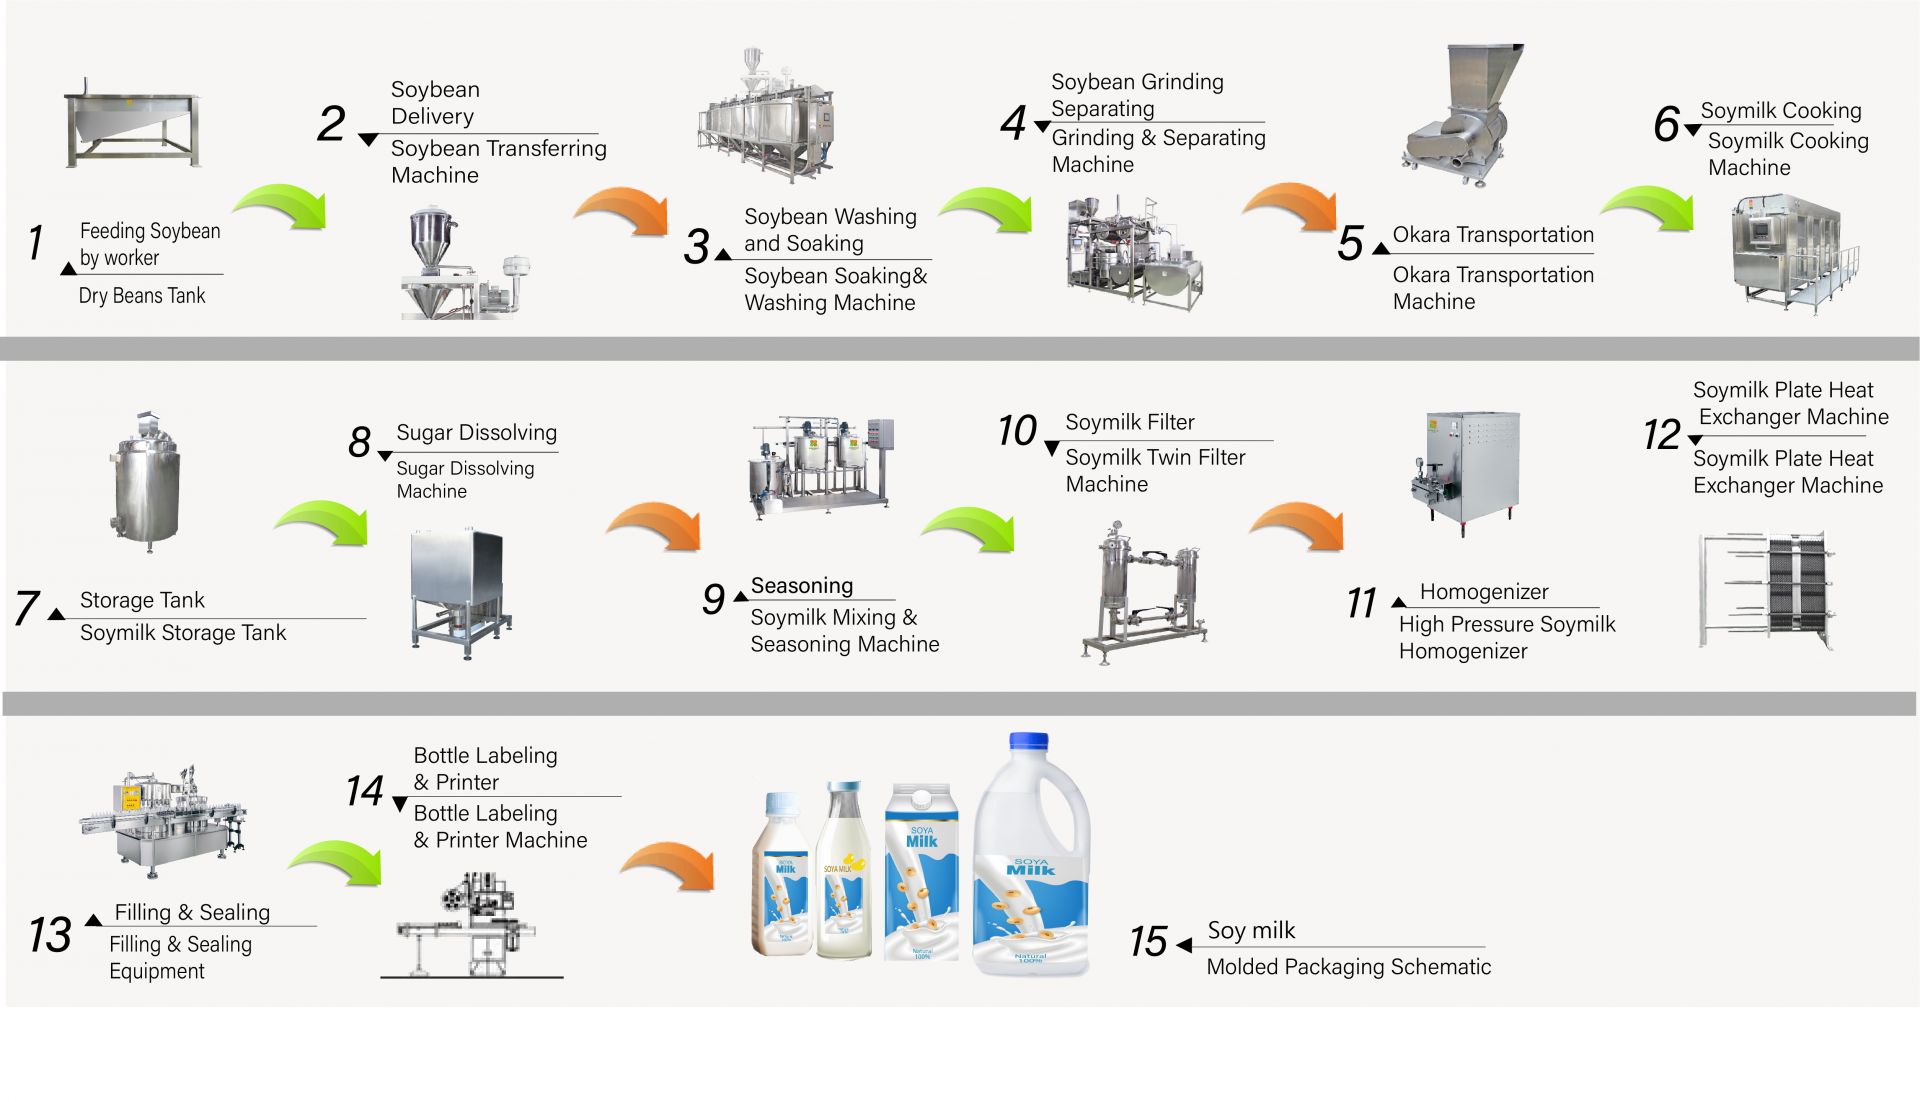 फैक्टरी में सोया दूध बनाने की प्रक्रिया, सोया दूध कैसे बनाएं, सोया दूध उत्पादन, सोया दूध फ्लो चार्ट, सोया दूध बनाने की प्रक्रिया, सोया दूध विनिर्माण प्रक्रिया, सोया दूध प्रक्रिया, सोया दूध प्रक्रिया फ्लो चार्ट, सोया दूध प्रसंस्करण फ्लो, सोया दूध प्रसंस्करण प्रक्रिया, सोया दूध उत्पादन, सोया दूध उत्पादन फ्लो चार्ट, सोया दूध उत्पादन प्रक्रिया, सोयाबीन प्रसंस्करण फ्लो चार्ट, स्वचालित सोयाबीन दूध मशीन, स्वचालित सोयाबीन दूध बनाने की मशीन, आसान टोफू निर्माता, सोया दूध का औद्योगिक उत्पादन, औद्योगिक सोया दूध विनिर्माण, औद्योगिक सोयाबीन दूध मशीन, औद्योगिक टोफू मशीन, प्लांट मिल्क मशीन, प्लांट मिल्क उत्पादन मशीन, सोया दूध का उत्पादन, सोया पेय पदार्थ मशीन, सोया पेय उत्पादन लाइन, सोया ड्रिंक मशीन, सोया दूध और टोफू बनाने का व्यापारिक सोया दूध मशीन, सोया दूध और टोफू बनाने की मशीन, सोया दूध पेय यंत्र और उपकरण, सोया दूध पकाने की मशीन, सोया दूध कारख़ाना, सोया दूध मशीन, सोया दूध व्यावसायिक मशीन, सोया दूध मशीन ताइवान में बनी, सोया दूध मशीनरी, सोया दूध मशीनरी और उपकरण, सोया दूध निर्माता, सोया दूध बनाने की मशीन, सोया दूध निर्माता, सोया दूध उत्पादन, सोया दूध उत्पादन उपकरण, सोया दूध उत्पादन कारखाना, सोया दूध उत्पादन लाइन, सोया दूध बनाने की मशीन कीमत, सोयाबीन प्रसंस्करण मशीन, सोयाबीन दूध कारखाना, सोयाबीन दूध मशीन